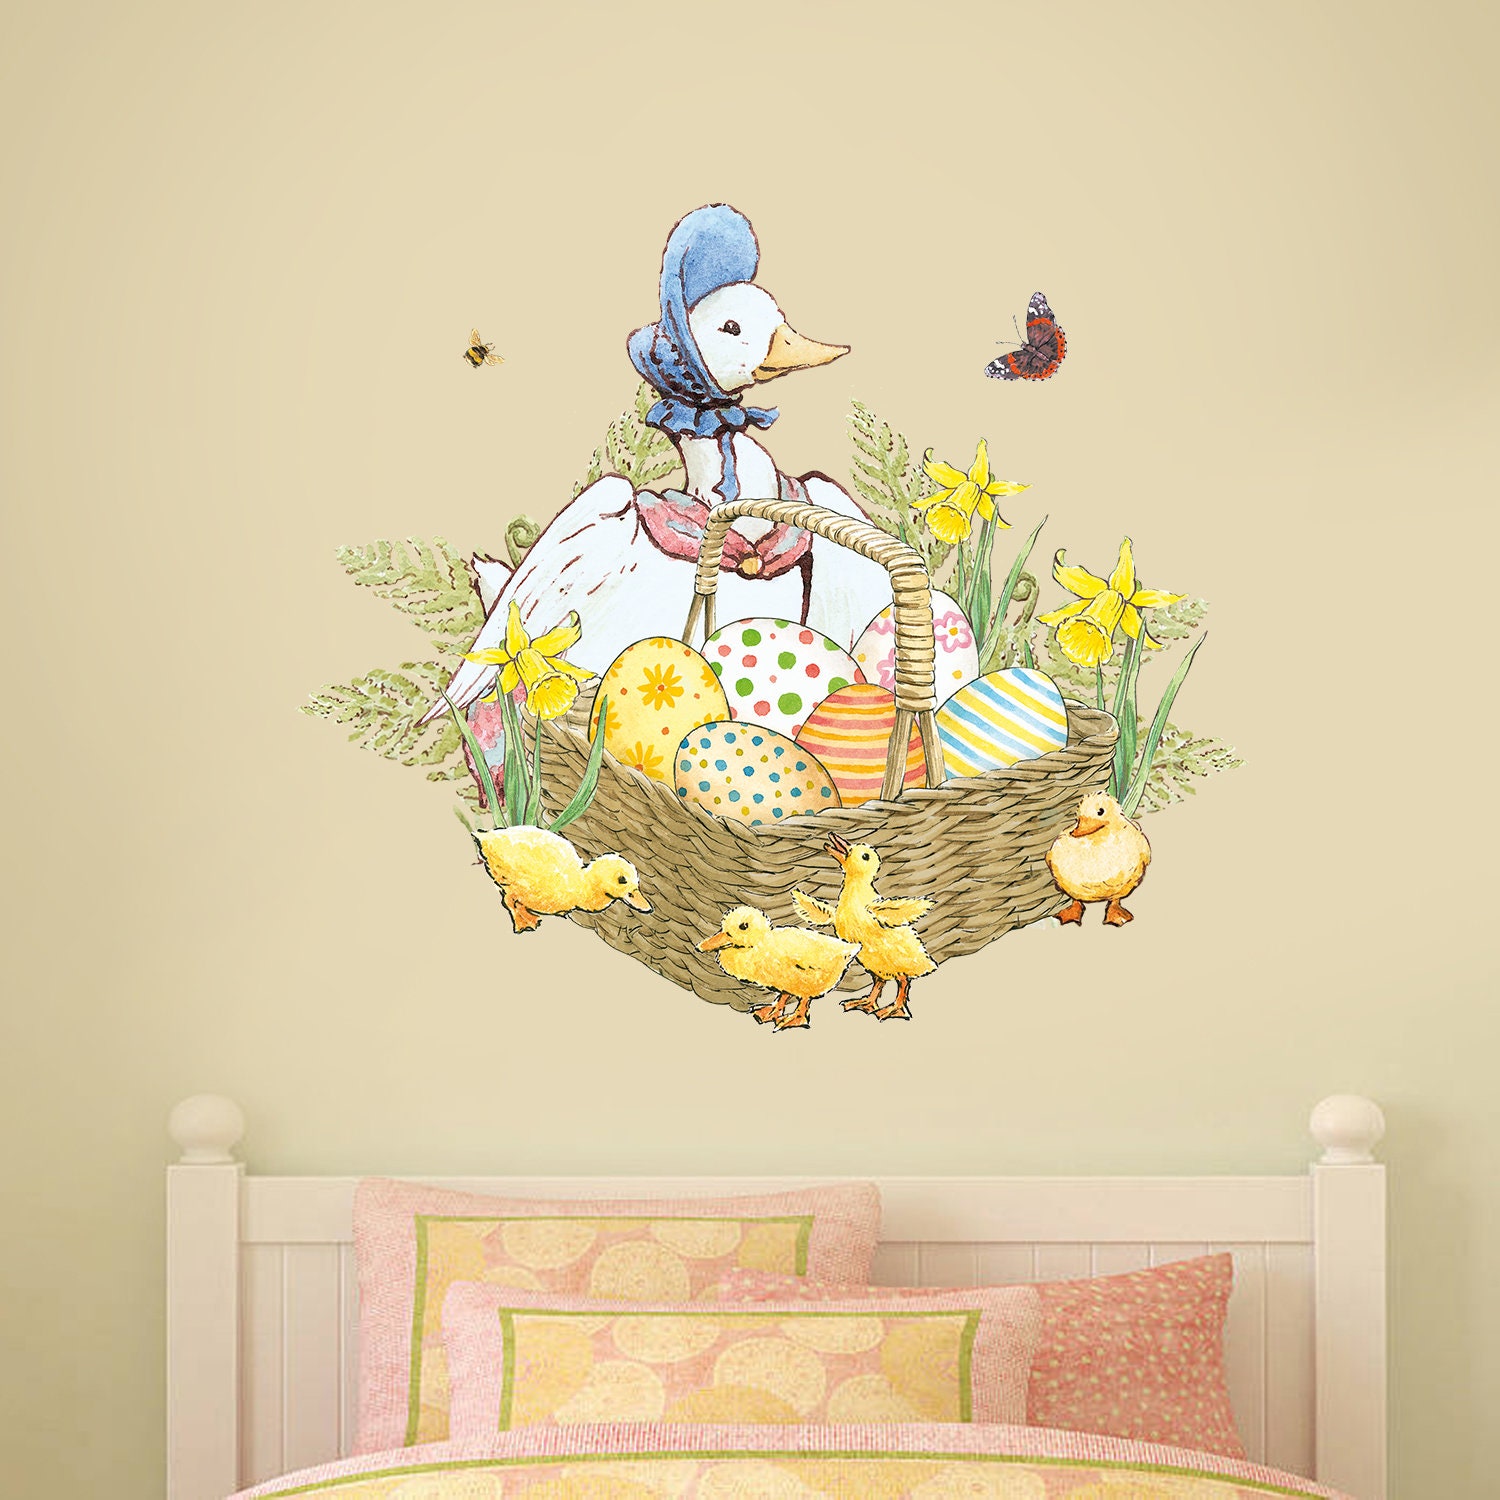 Adesivo murale ufficiale Peter Rabbit Jemima Puddle Duck e anatroccoli  PB037 -  Italia